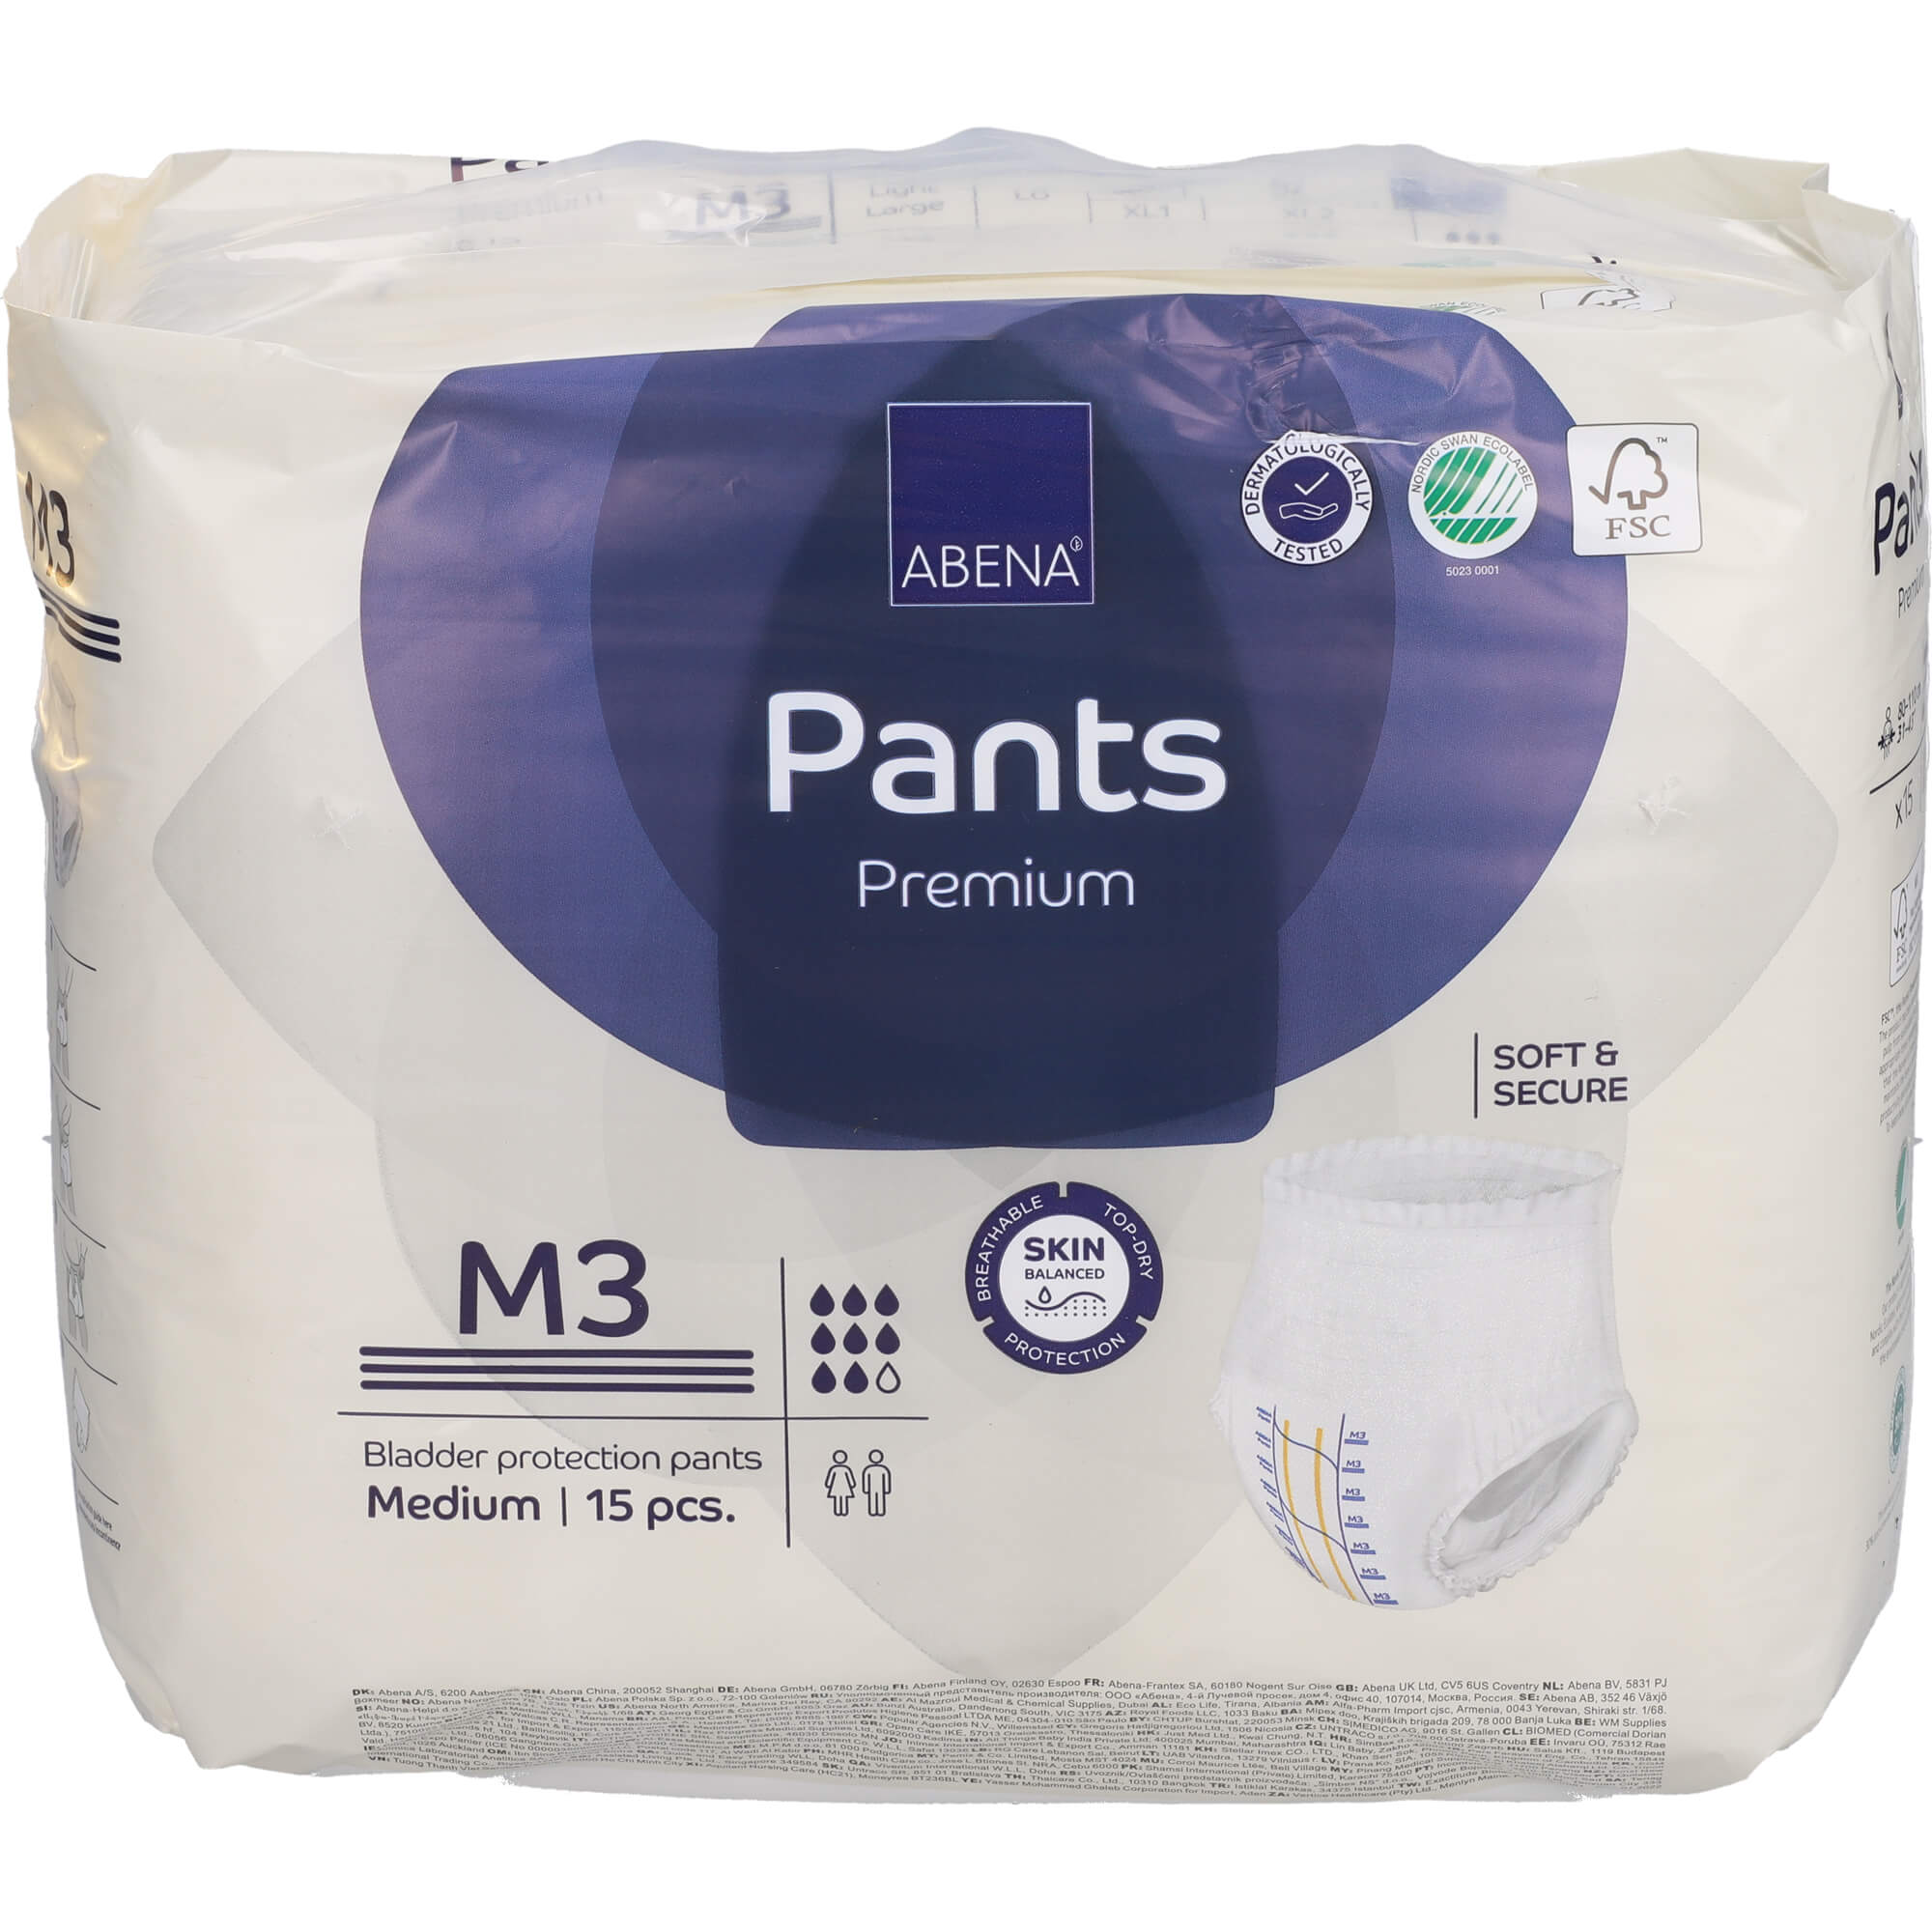 ABENA Pants Premium M3